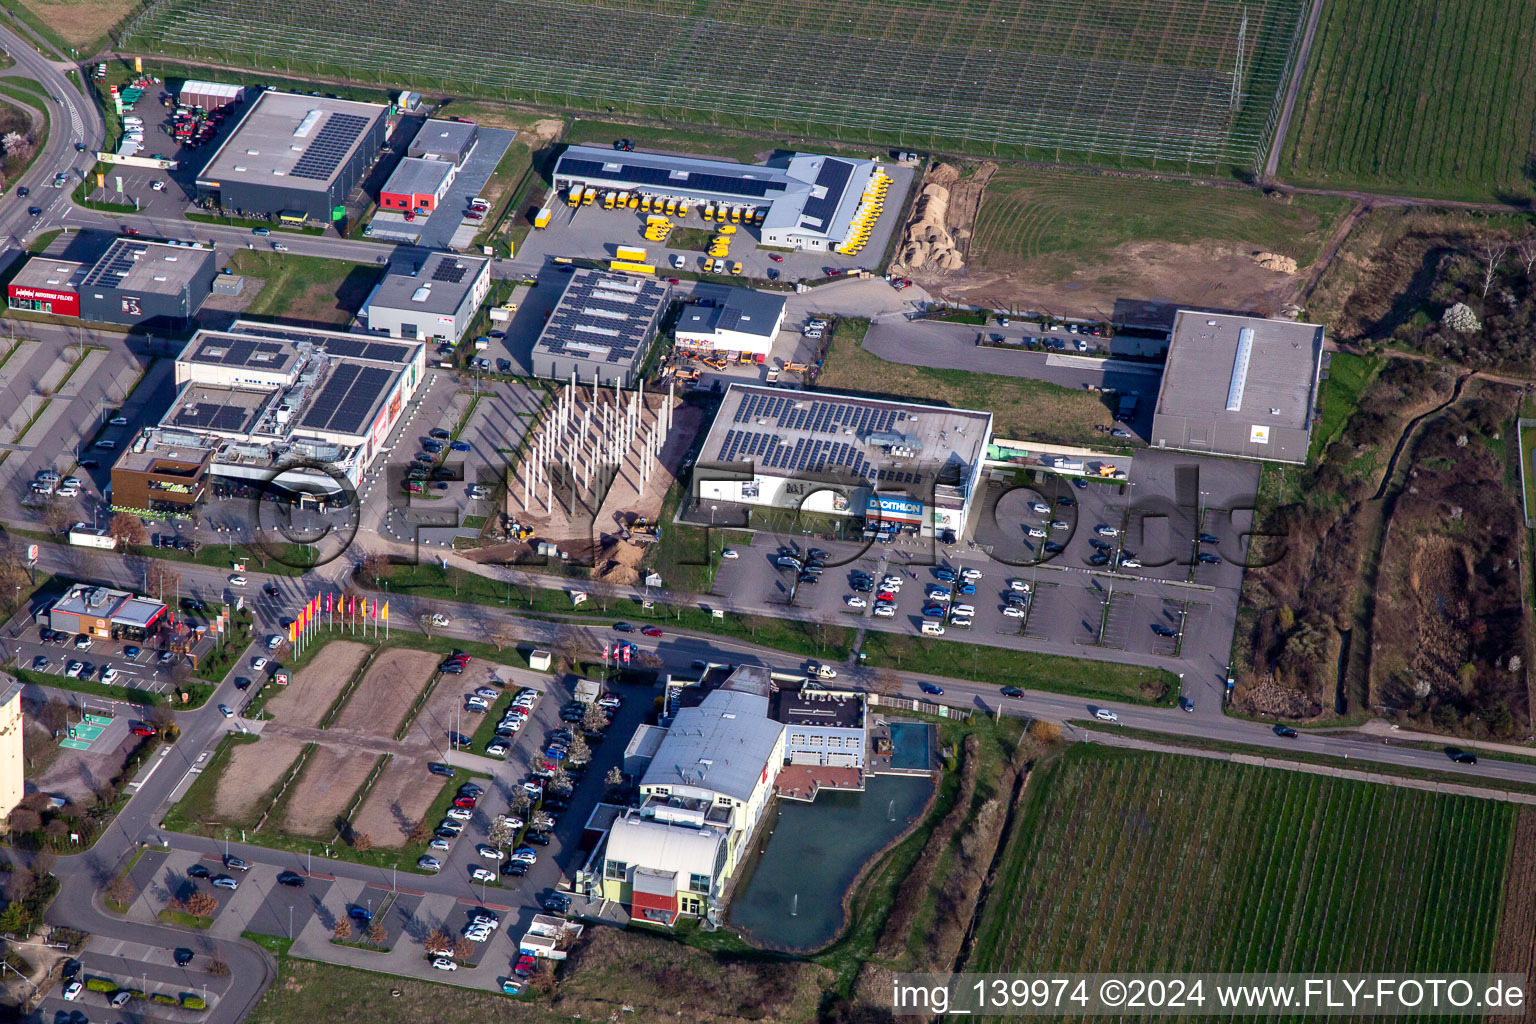 Luftbild von DECATHLON in Neustadt an der Weinstraße im Bundesland Rheinland-Pfalz, Deutschland